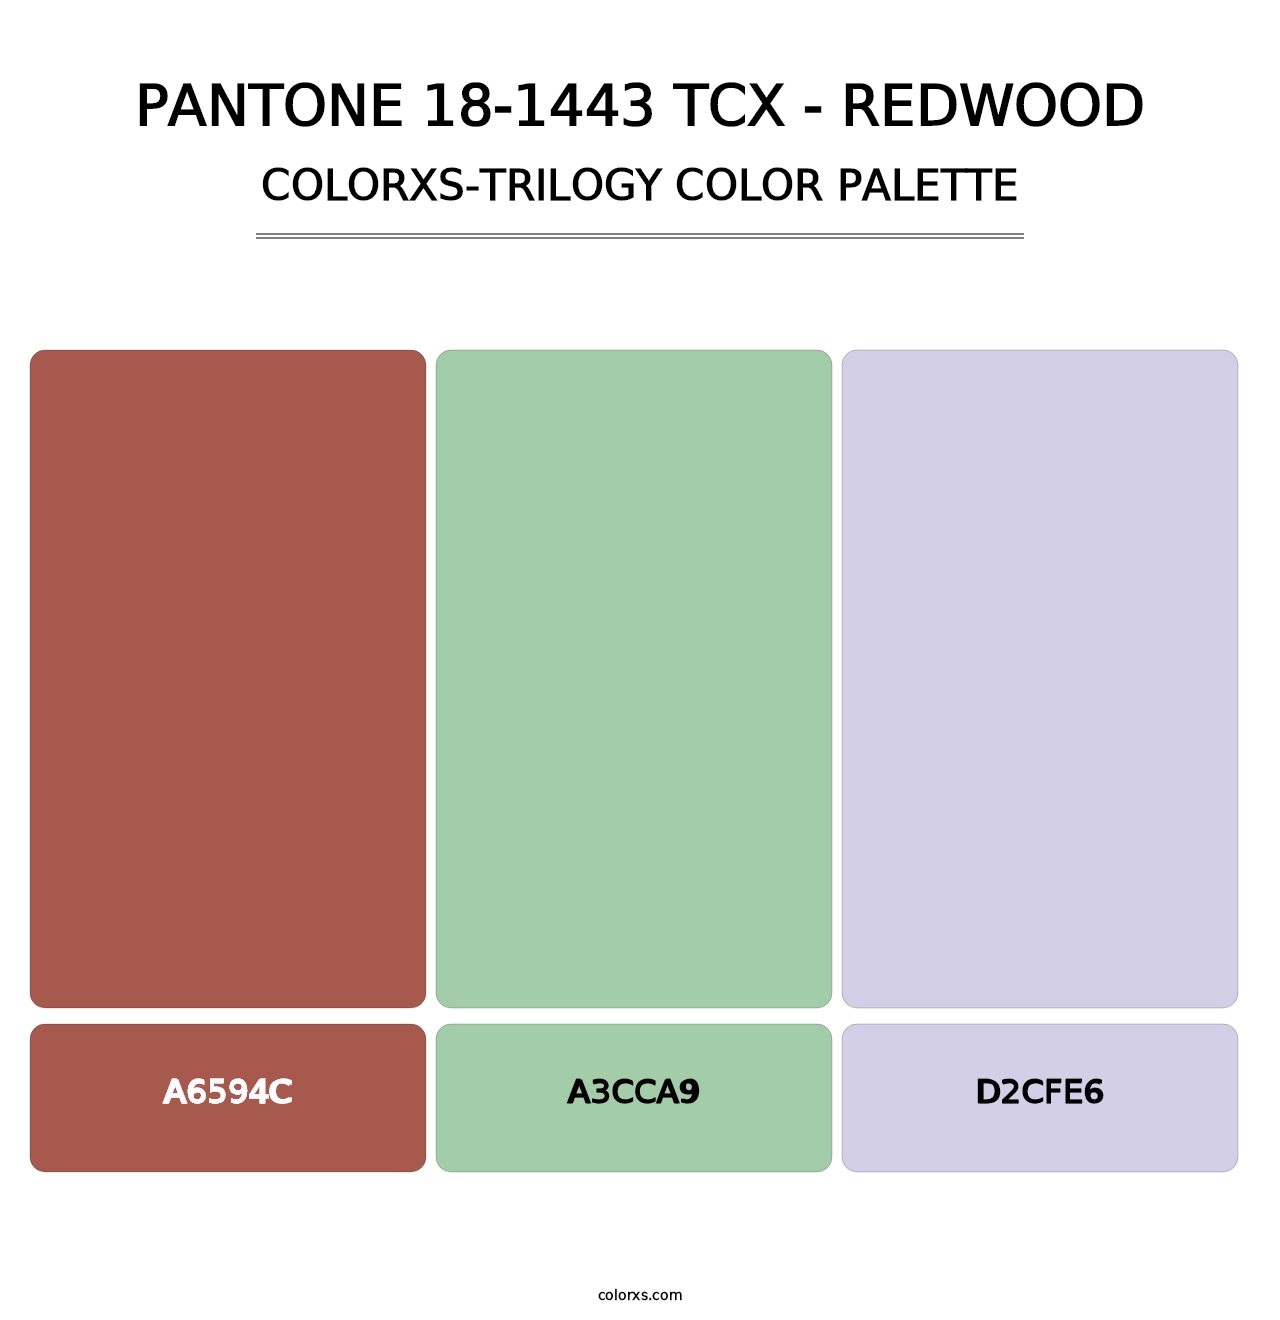 PANTONE 18-1443 TCX - Redwood - Colorxs Trilogy Palette